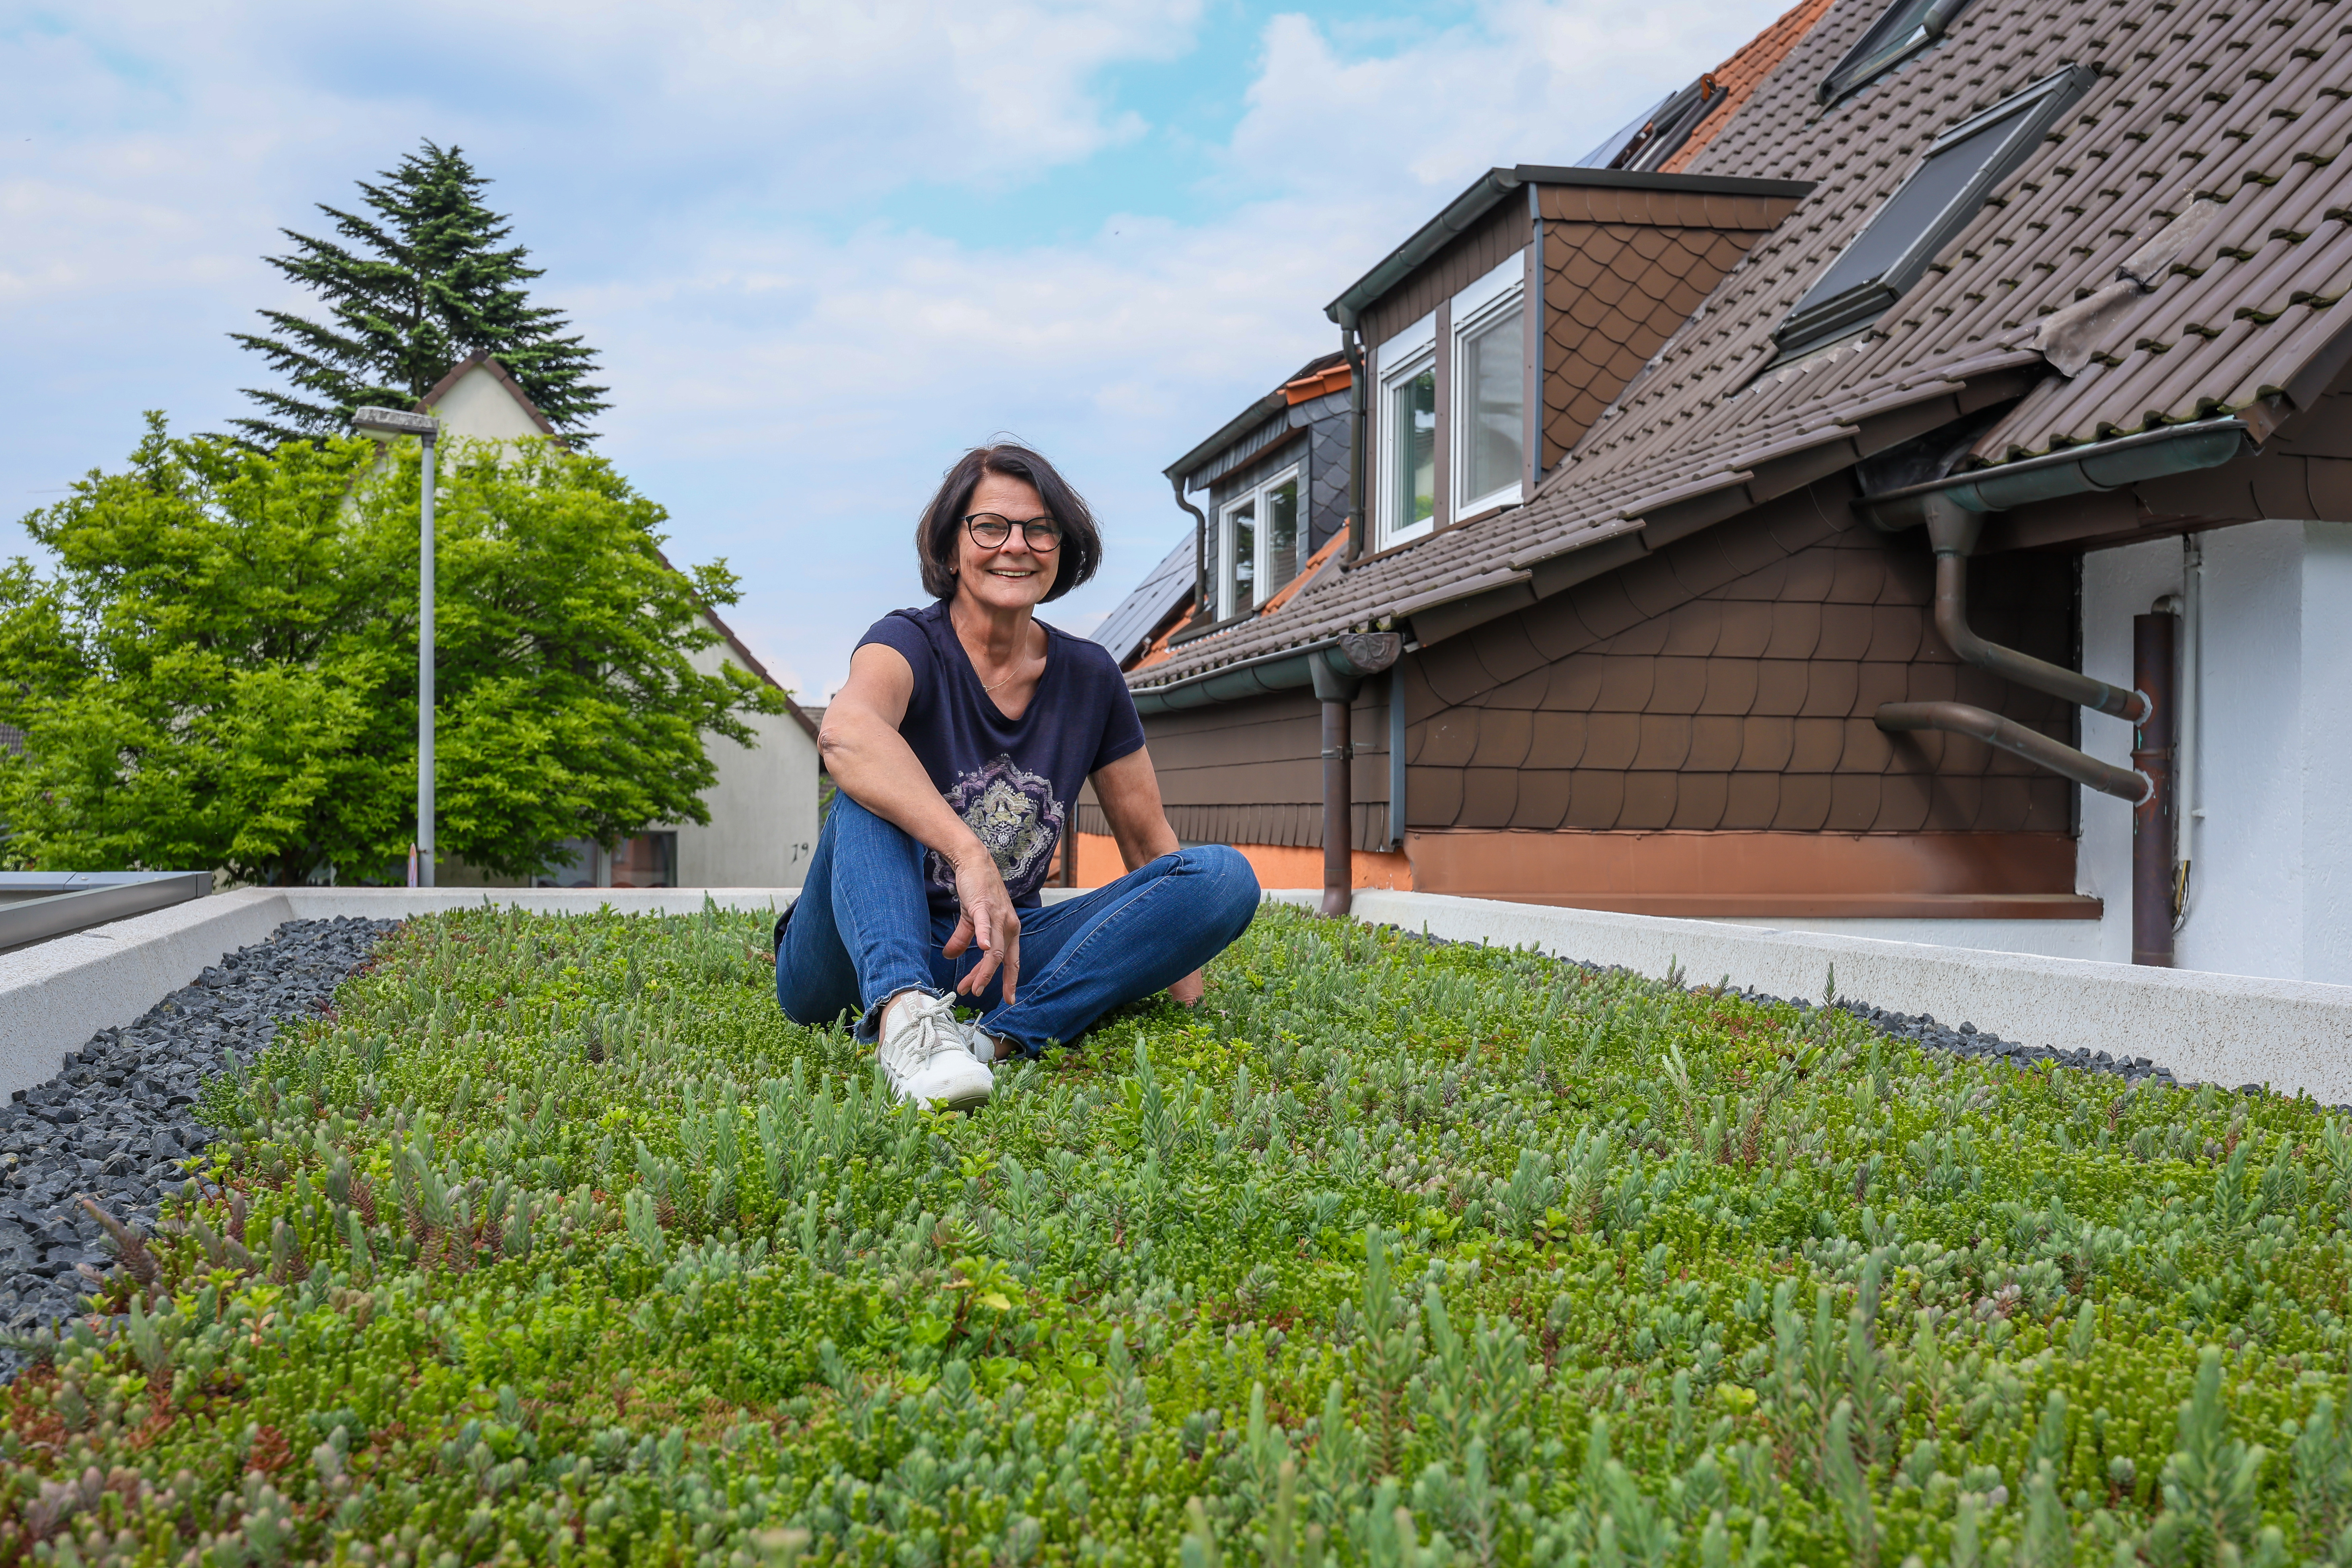 Eine Frau, Gerrit Buckesfeld, sitzt lässig mit verschränkten Beinen auf ihrem begrünten Garagendach. Im Hintergrund ist das Hausdach zusehen.